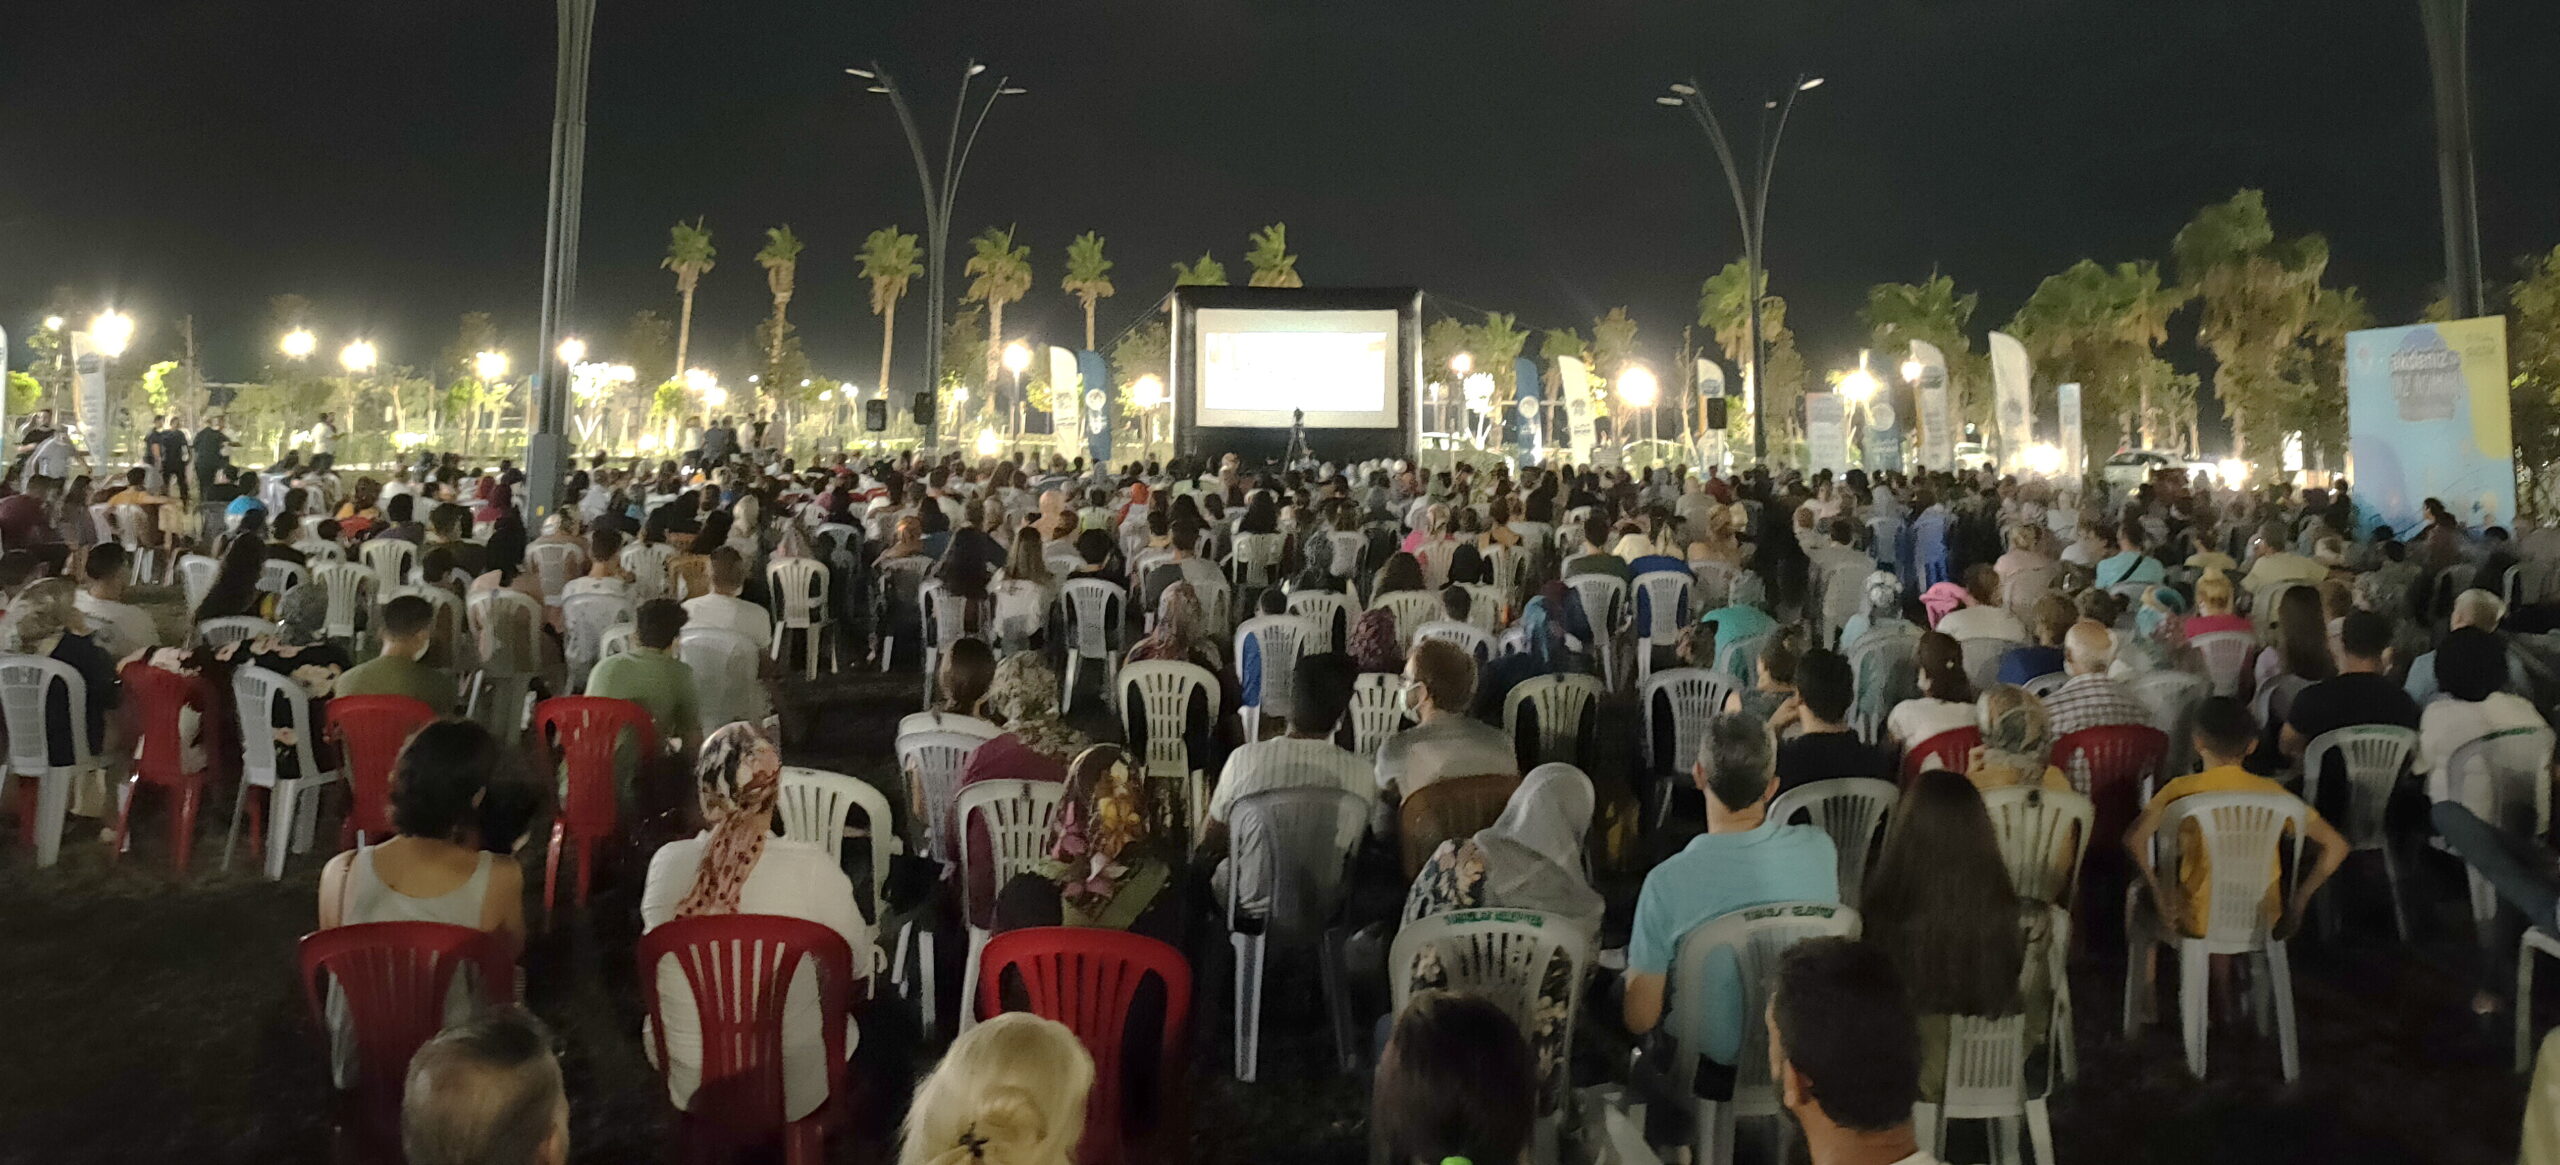  Akdeniz Belediyesi Yaz Etkinliklerine Açık Hava Sinema ile Başladı